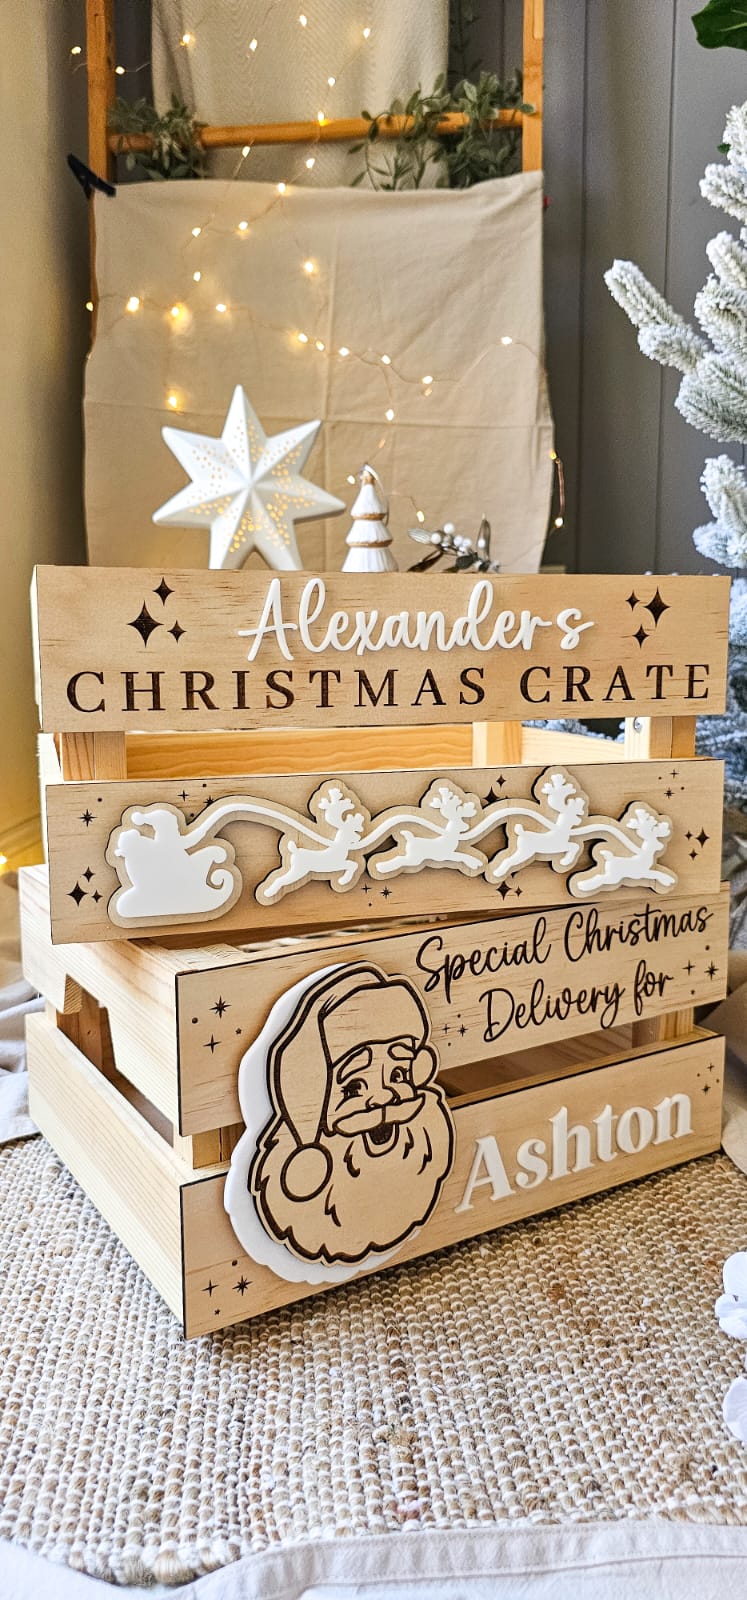 Christmas Crate - Acrylic